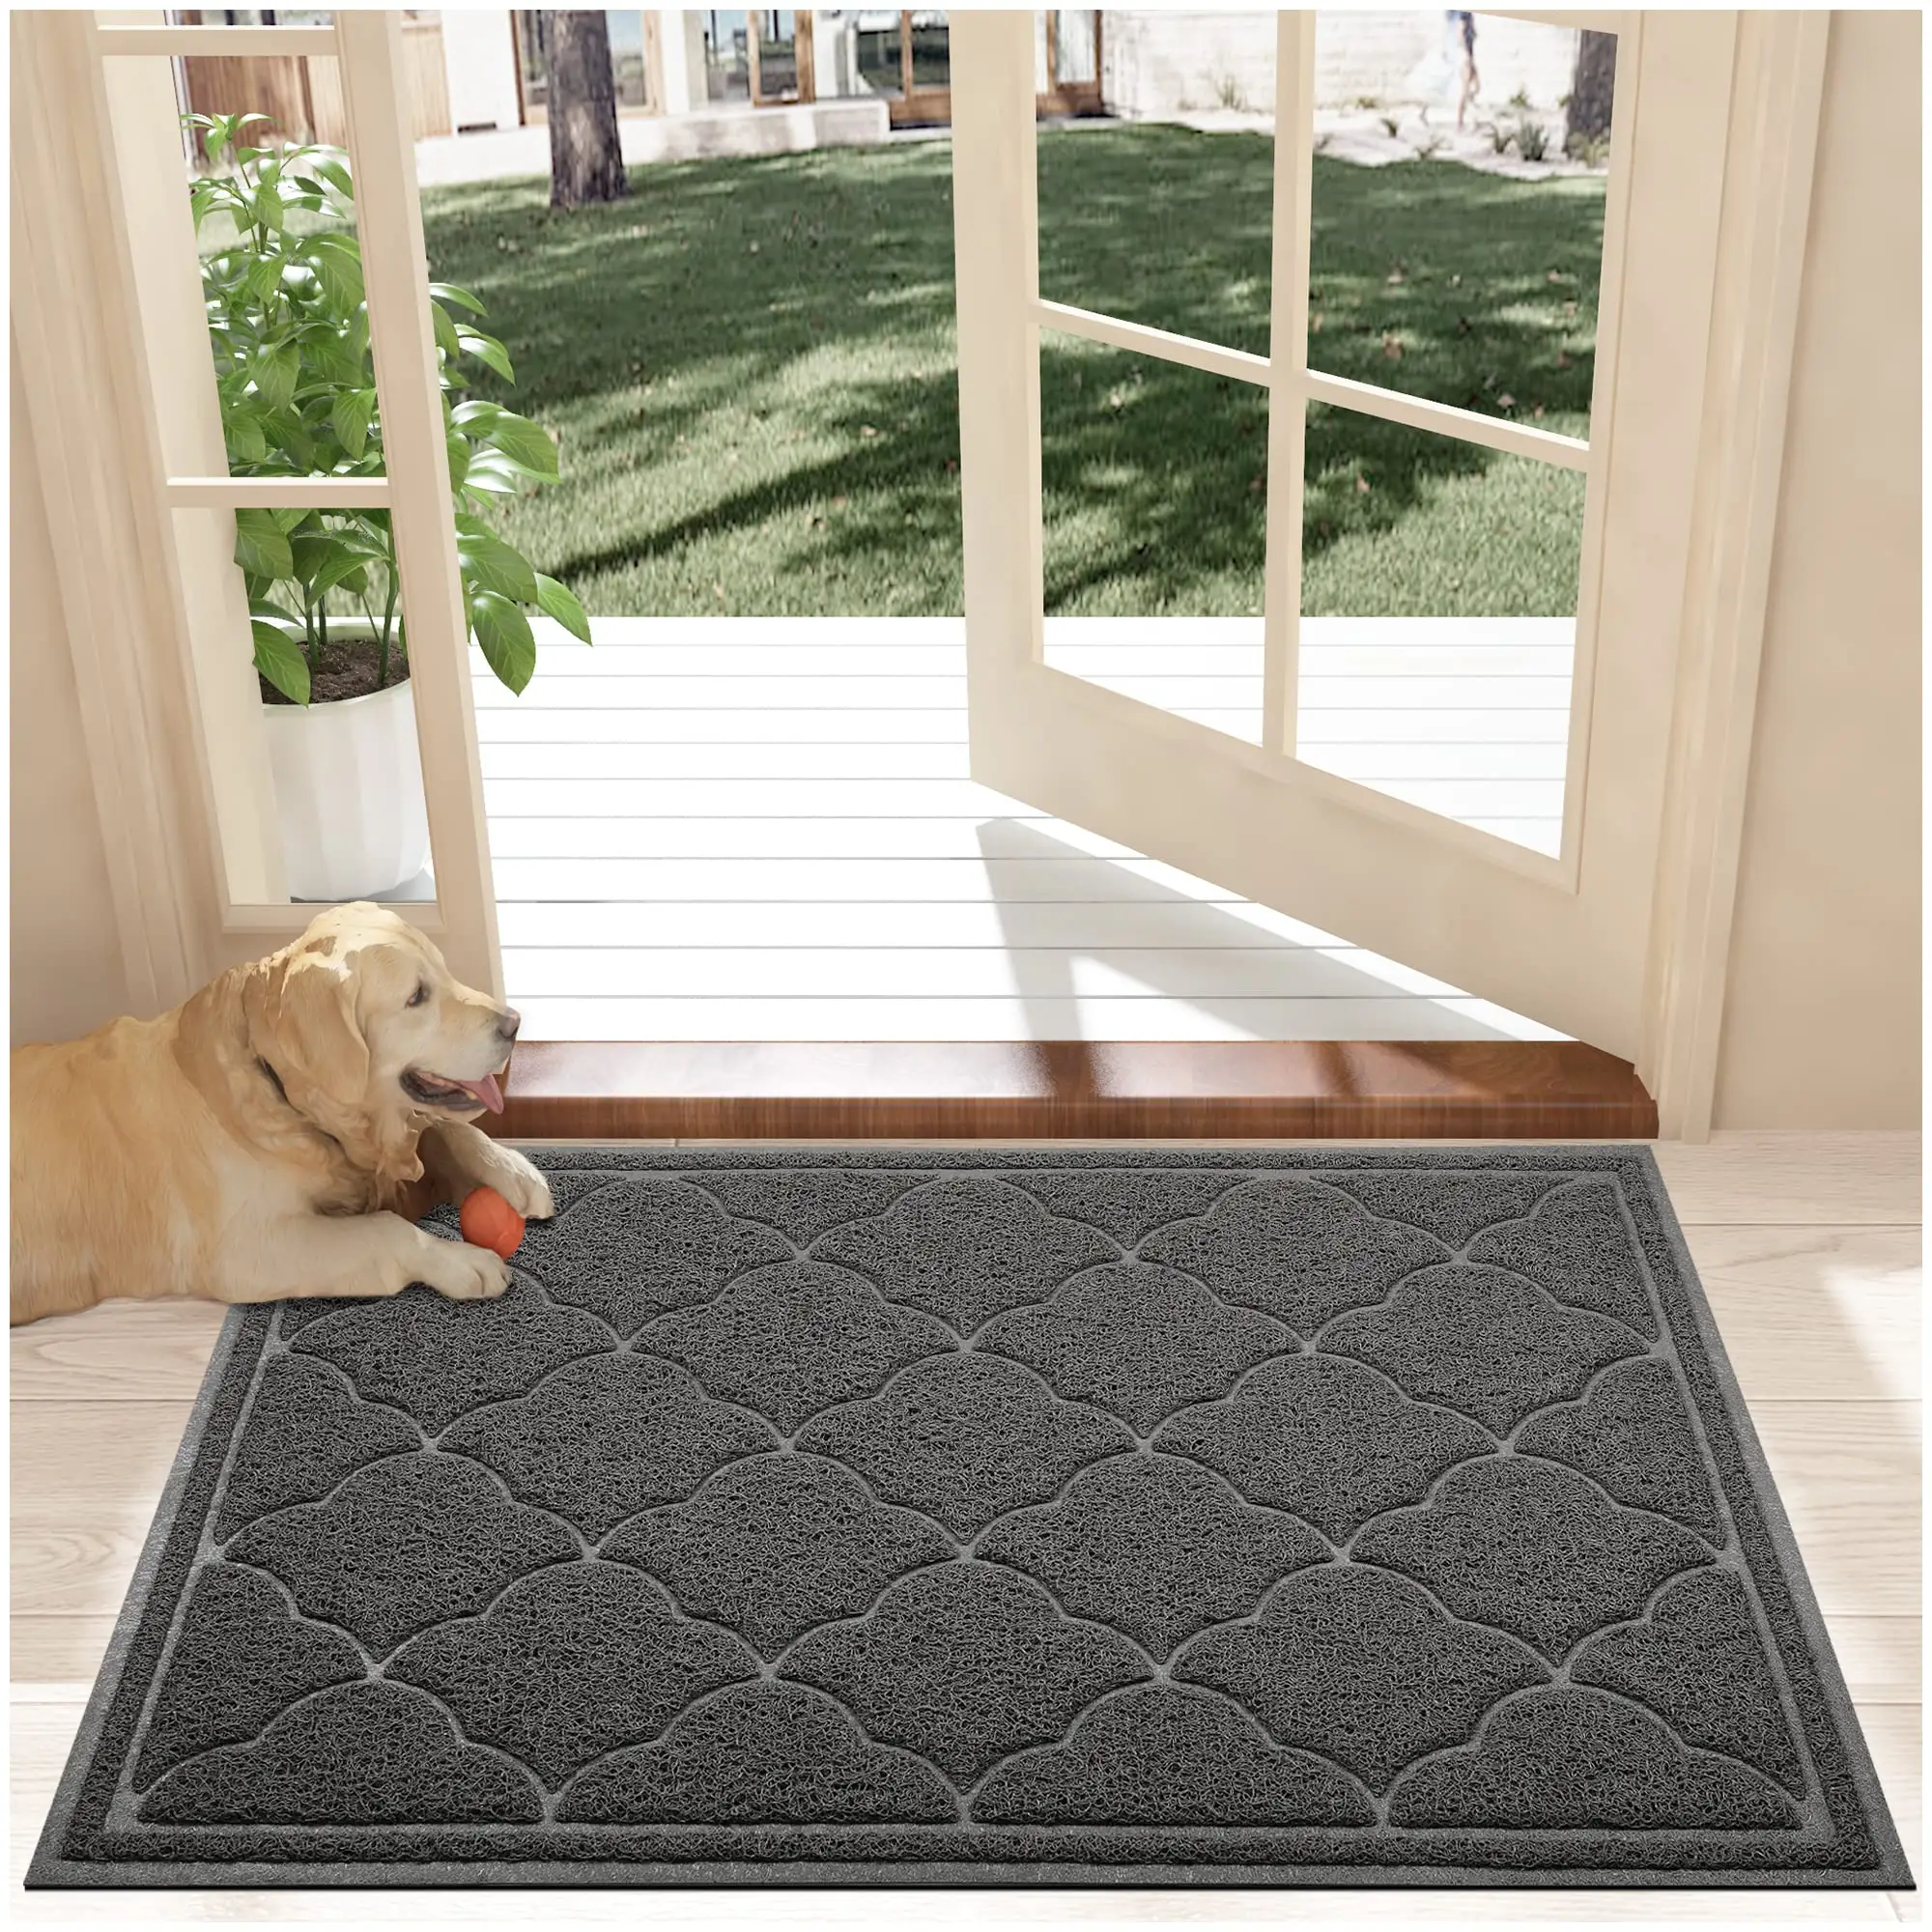 Quiar Floor Mat Large Front Non Slip Waterproof Welcome Mats Outdoor Durable Low Profile Dirt Trap pvc door mat for Indoor